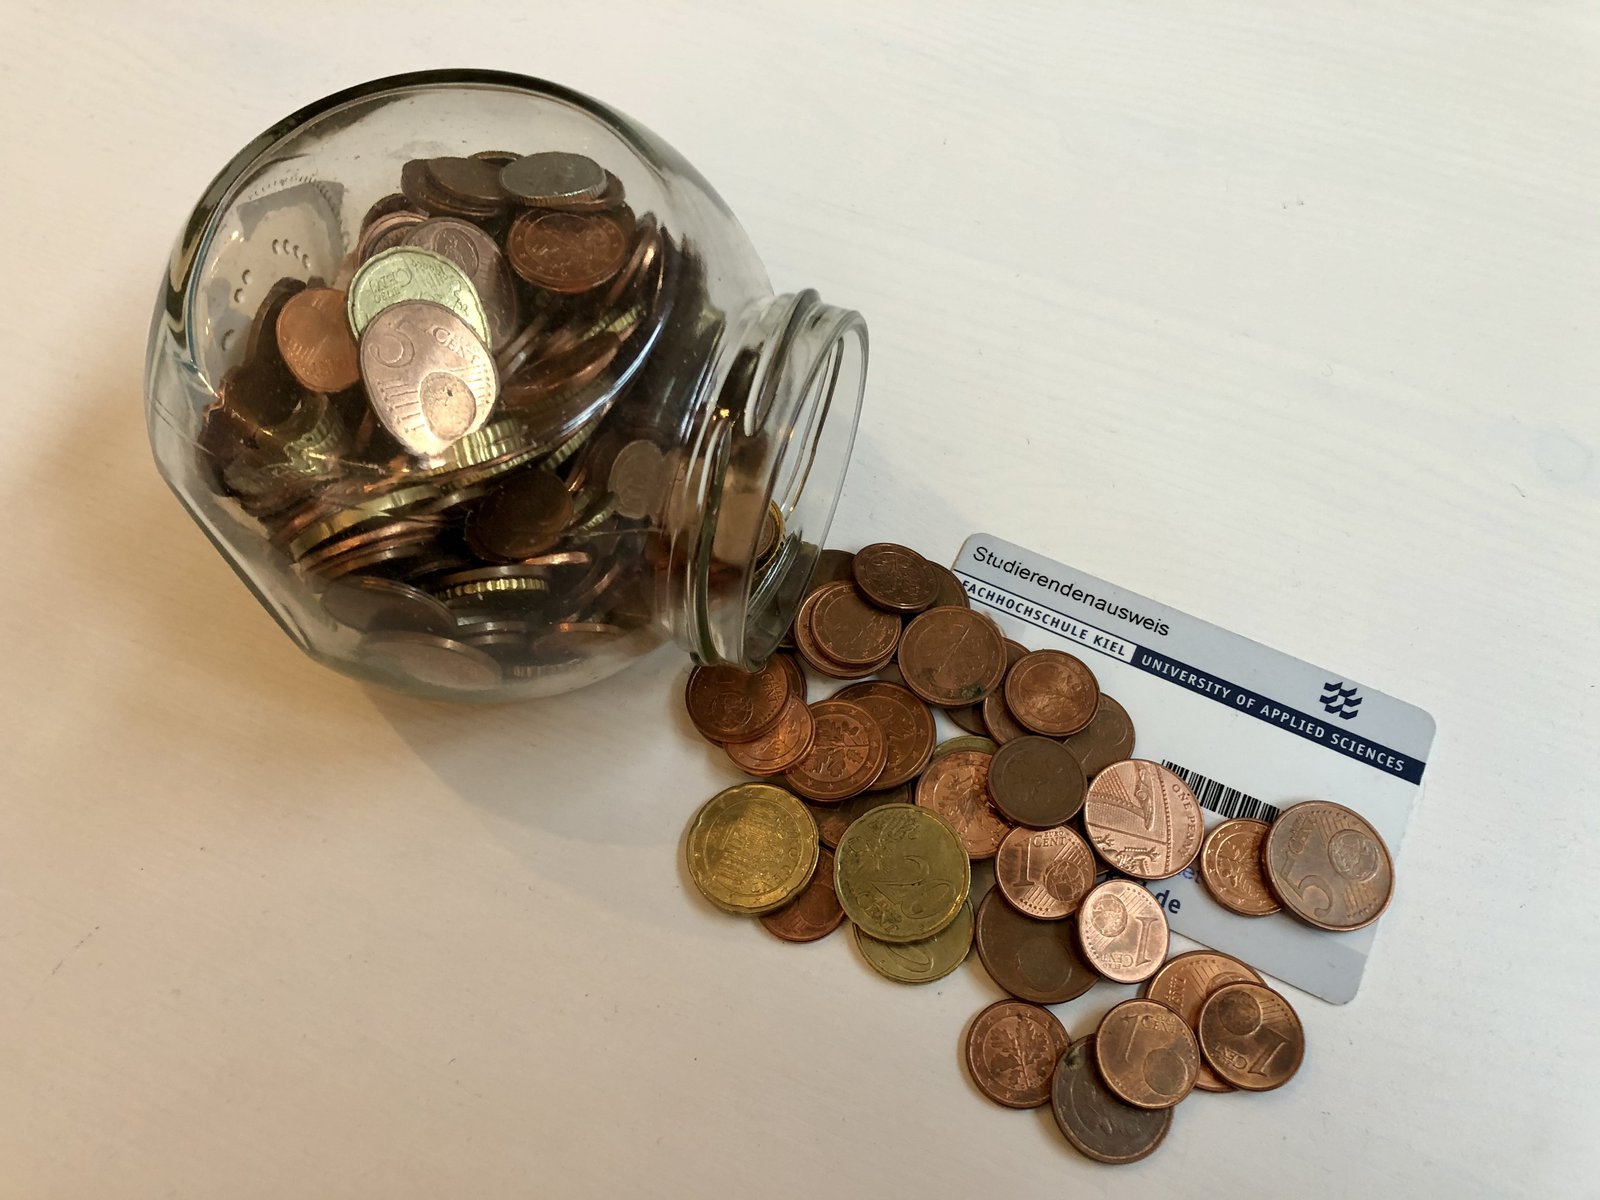 Eine umgekippte Spardose und Münzen, die auf einem Studierendenausweis liegen.